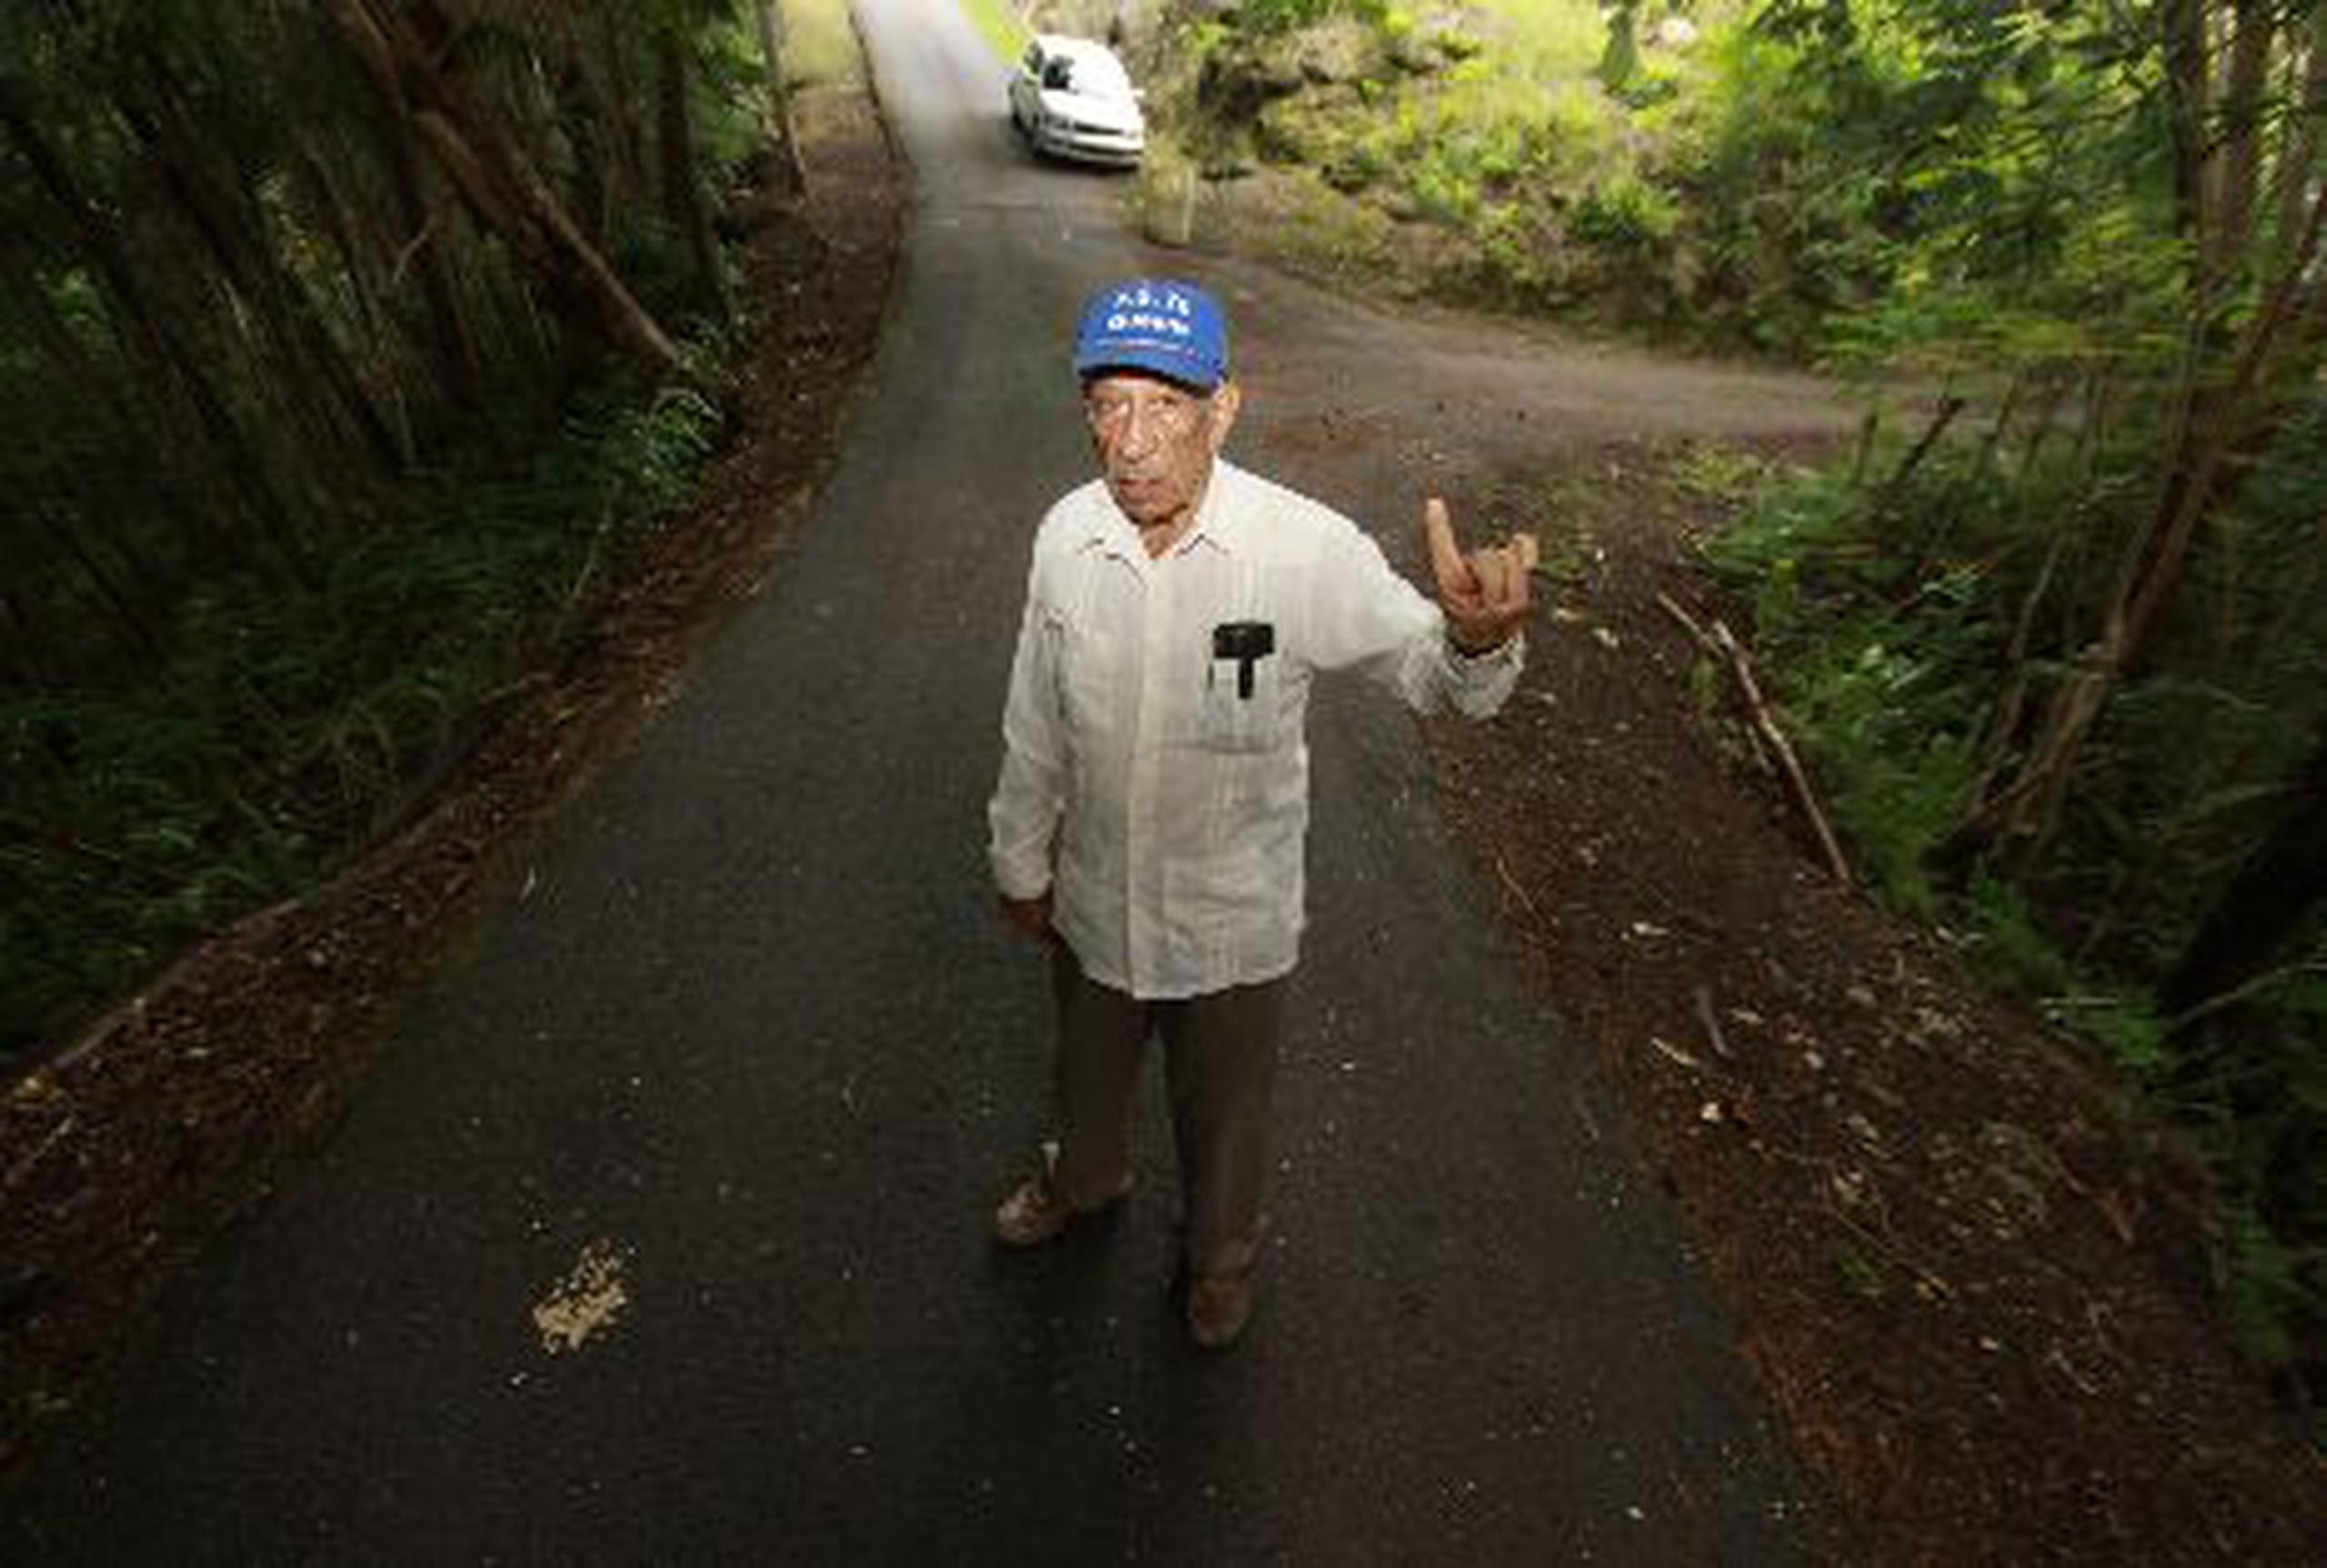  Ángel Class, de 77 años, lleva  más de un año pidiéndole al Municipio que arreglen un camino peligroso.&nbsp;<font color="yellow">(Para Primera Hora / Nelson Reyes Faría)</font>